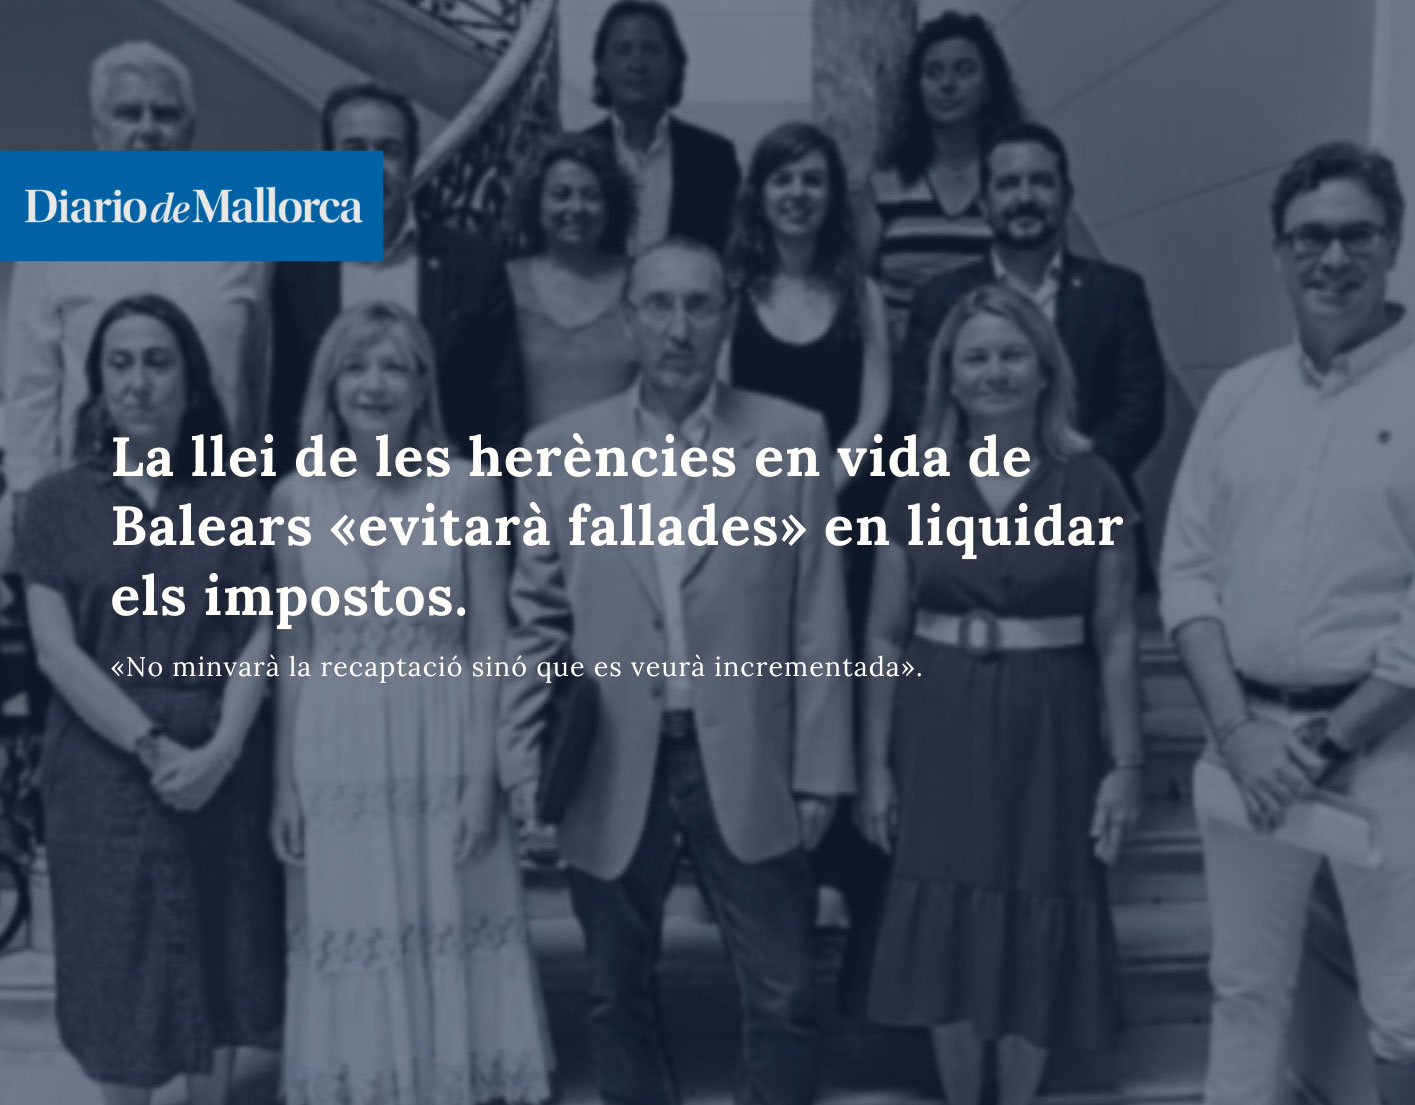 La llei de les herències en vida de Balears «evitarà fallades» en liquidar els impostos. Miquel Àngel Mas en Diari de Mallorca.